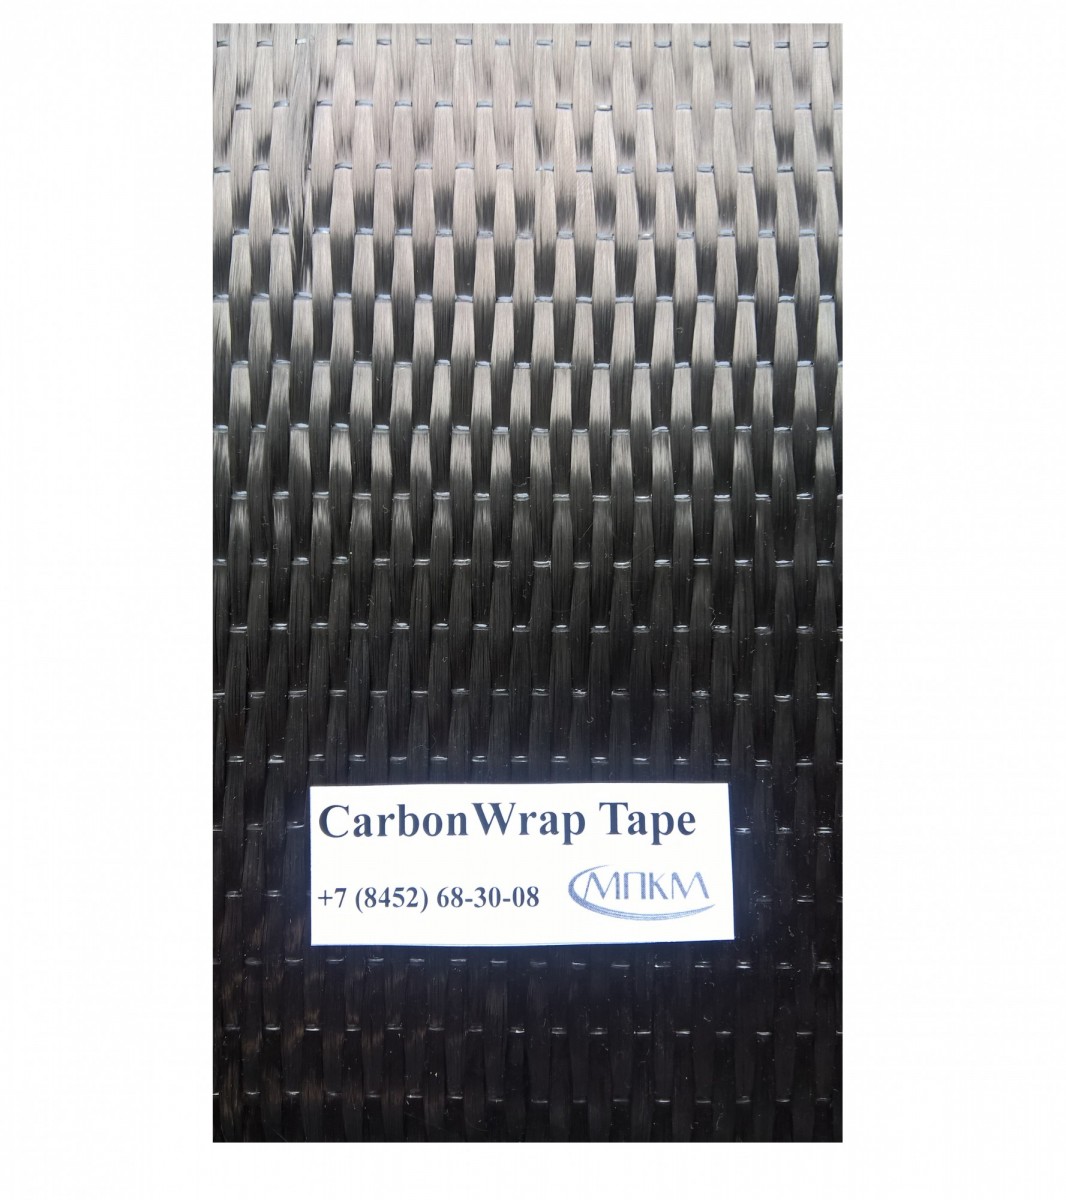 CarbonWrap Tape-230/150